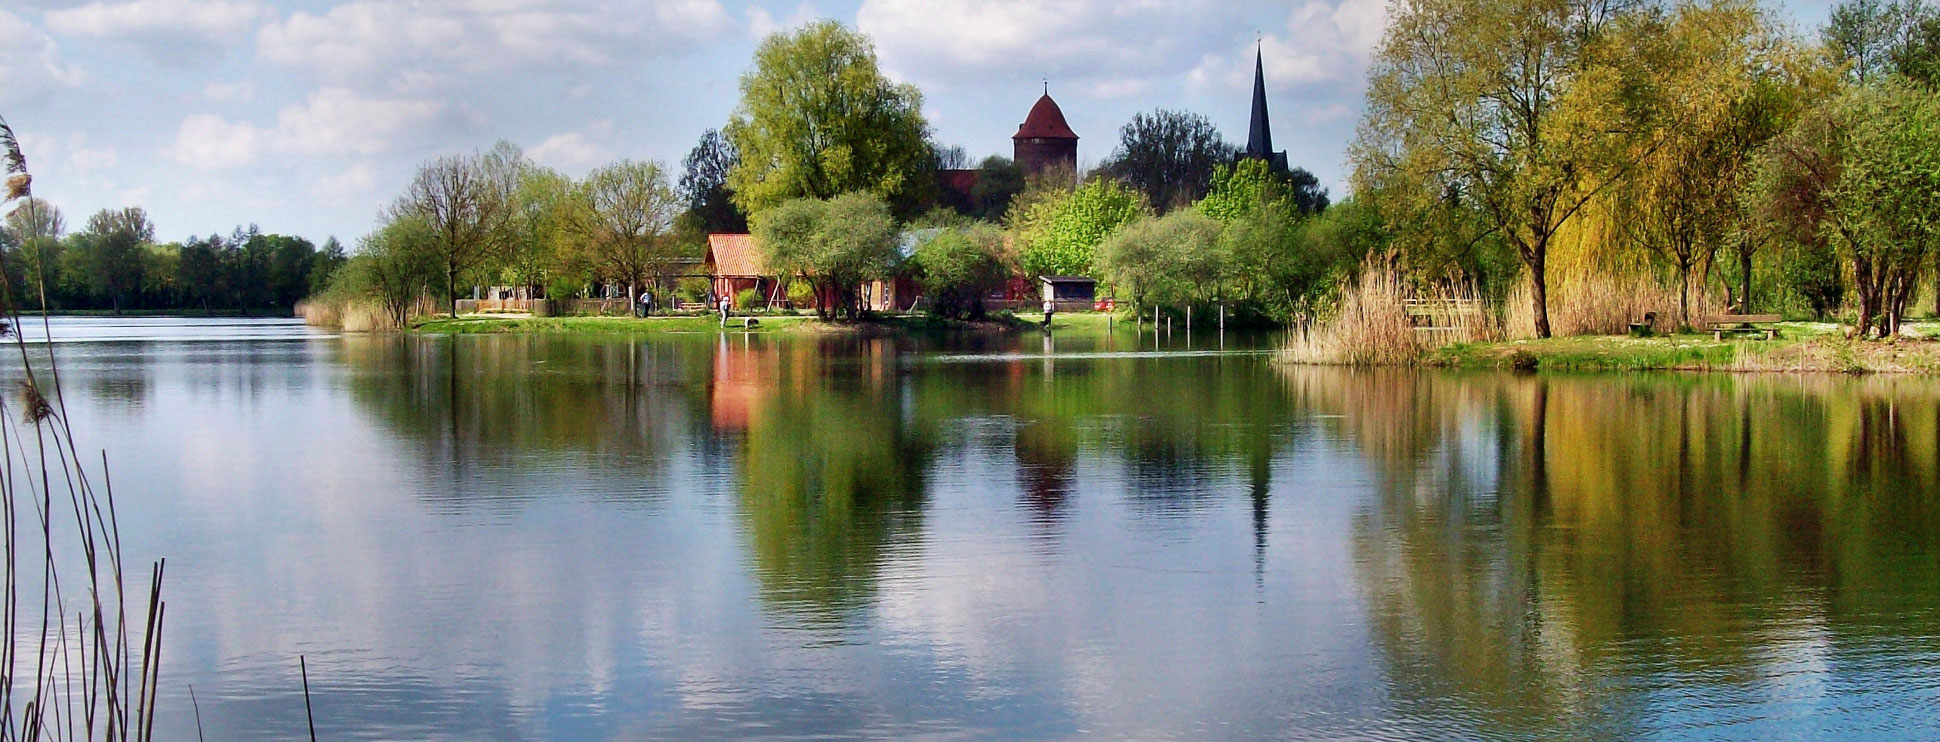 Thielenburger See